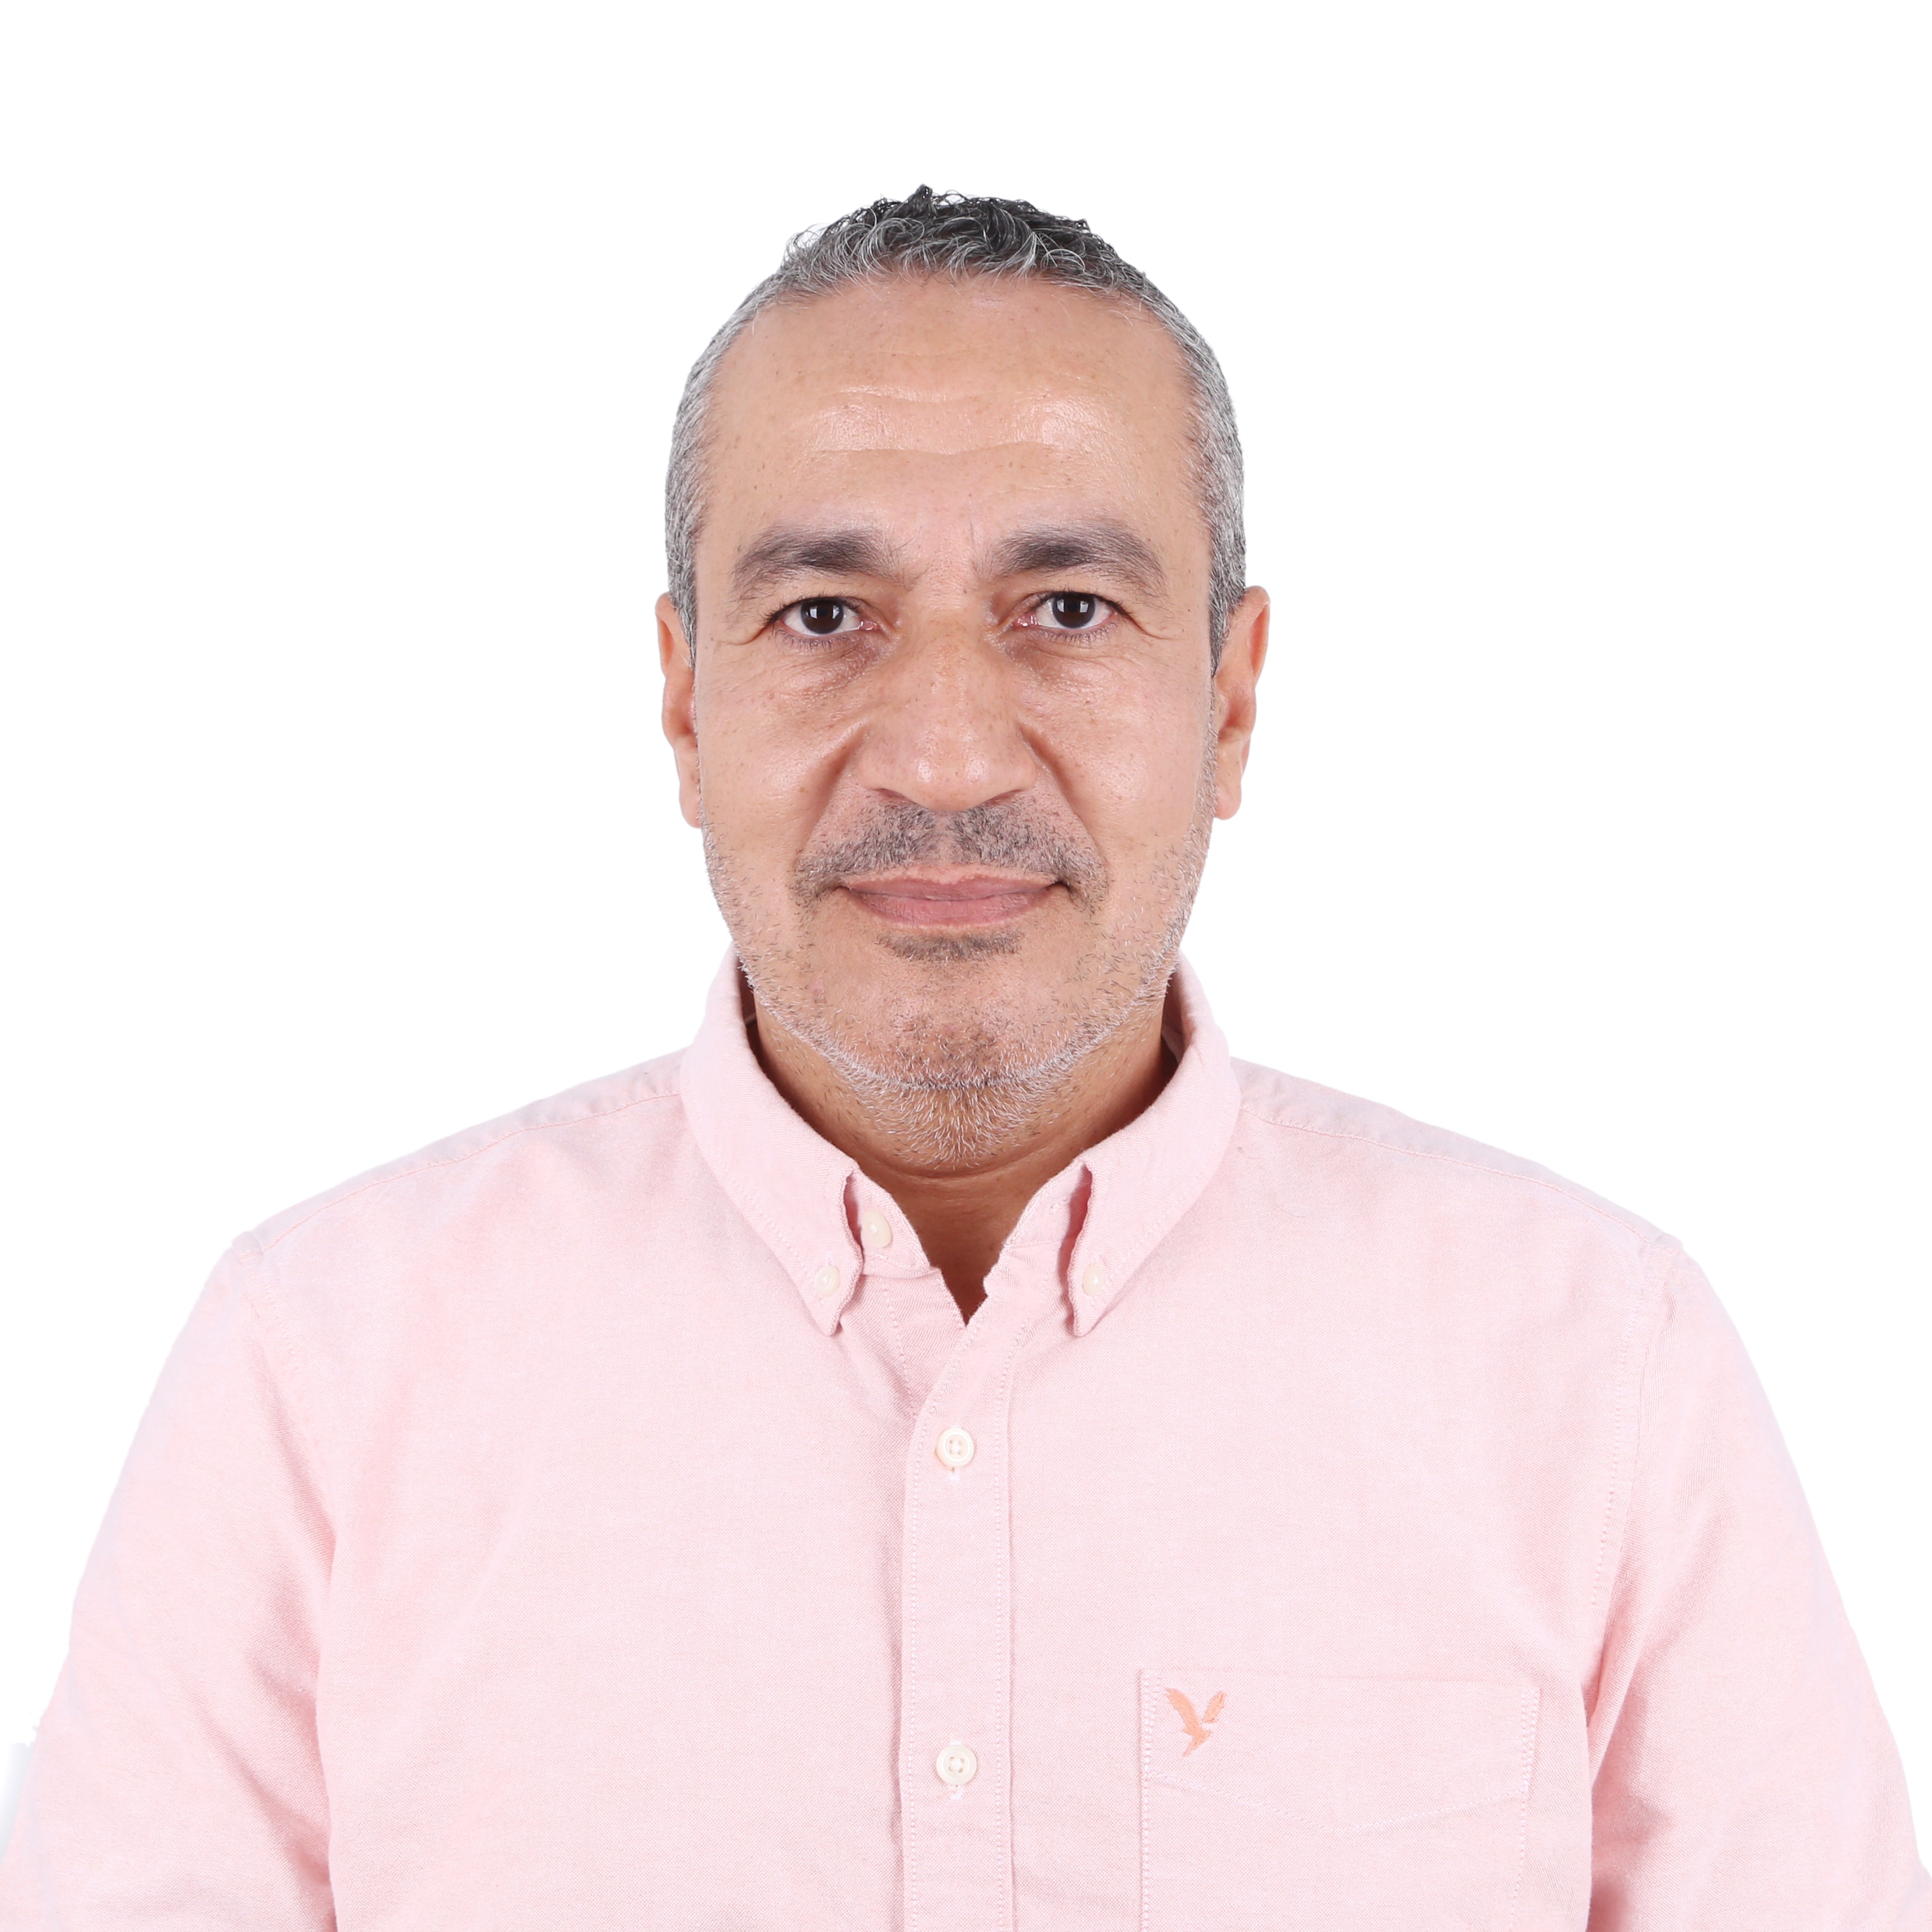 Mohamed Abdelsalam Hassan